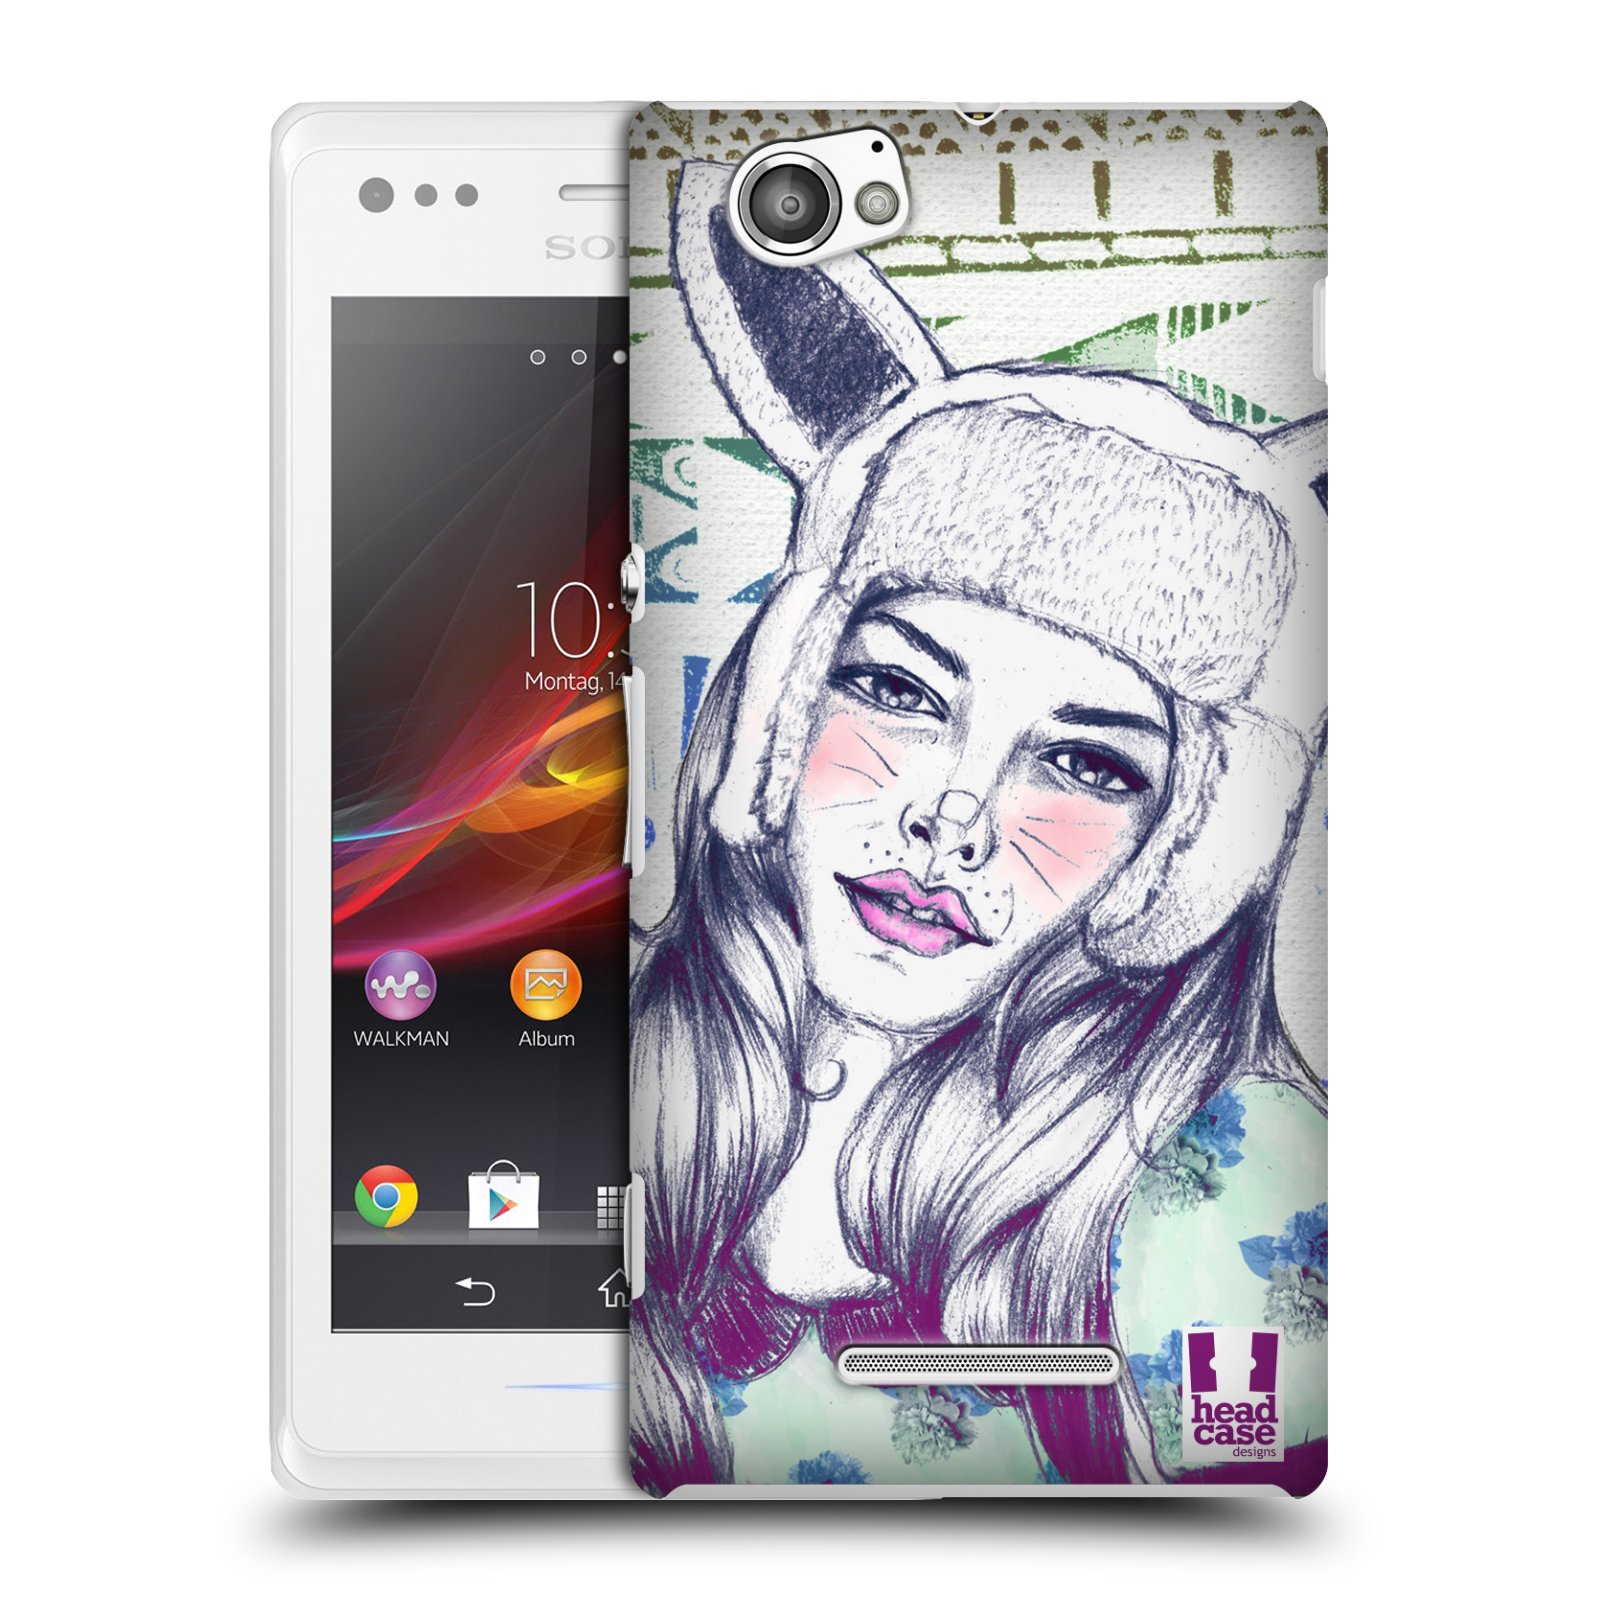 HEAD CASE plastový obal na mobil Sony Xperia M vzor Děvče zvířecí tématika zajíček čepka